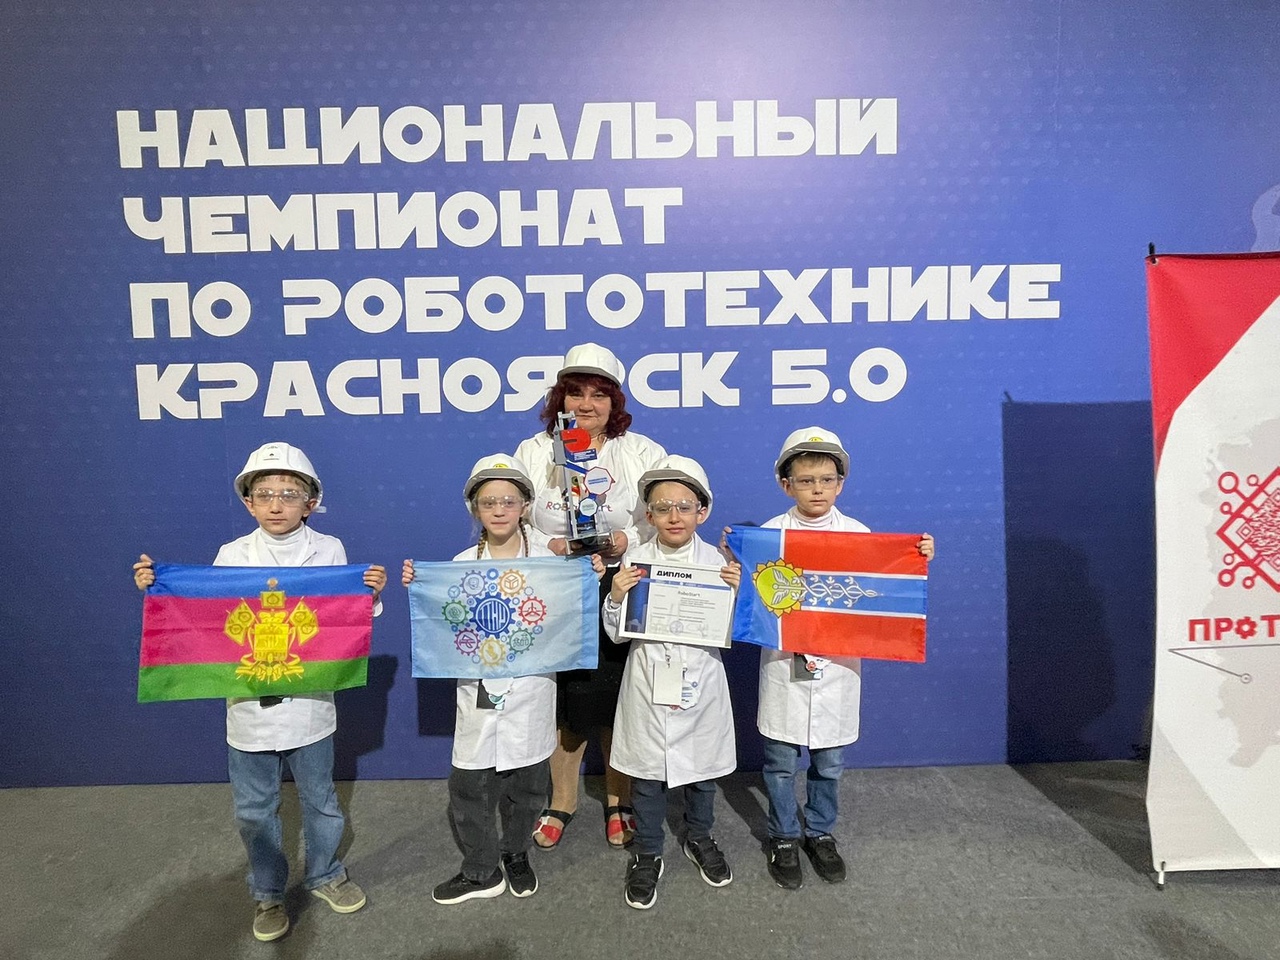 Команда Армавира приняла участие в Национальном Чемпионате по робототехнике «Красноярск 5.0»